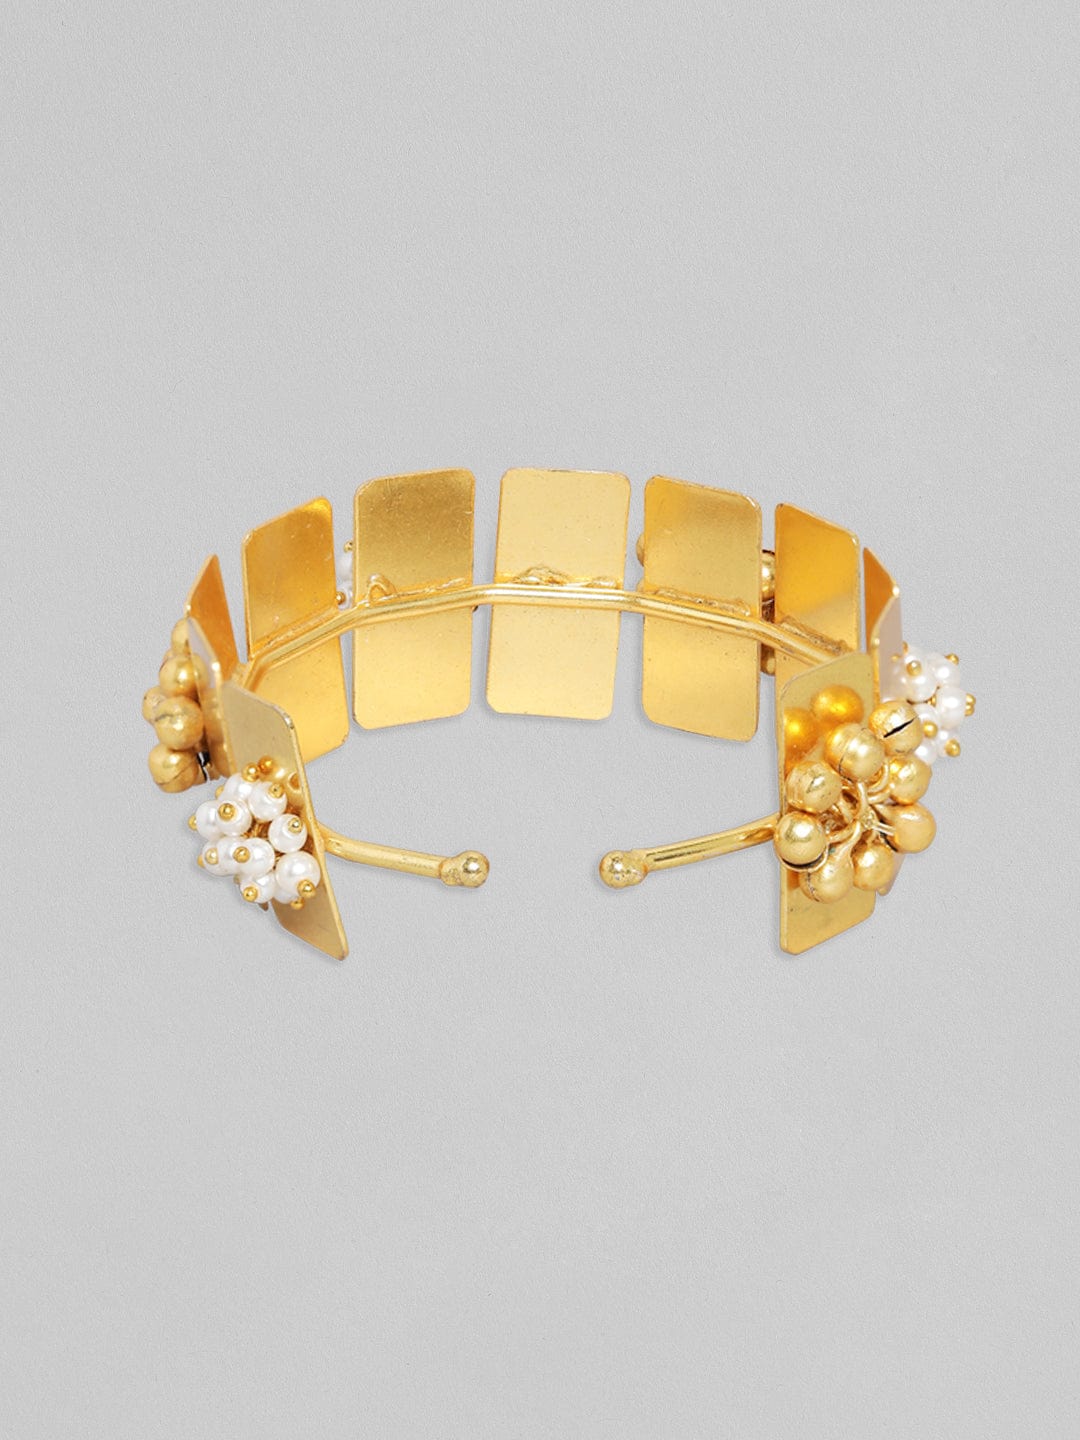 24K Solid Gold Handmade Bangle Bracelet 999 187gram  eBay